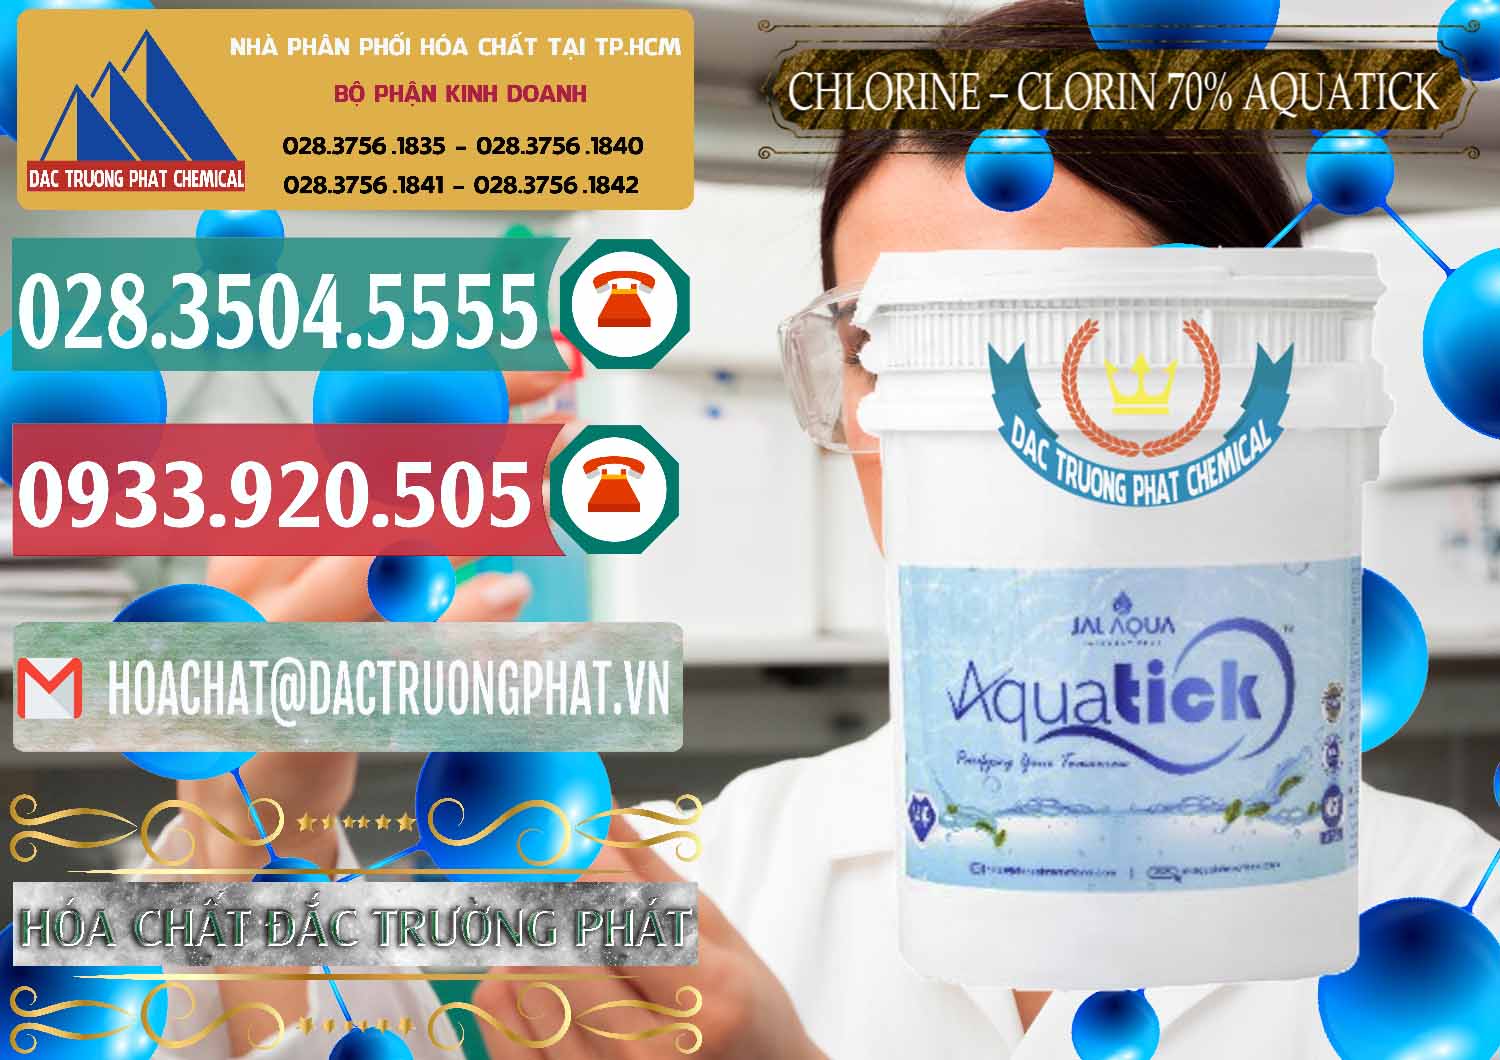 Cty cung cấp _ bán Chlorine – Clorin 70% Aquatick Thùng Cao Jal Aqua Ấn Độ India - 0237 - Nhà cung cấp - kinh doanh hóa chất tại TP.HCM - muabanhoachat.vn